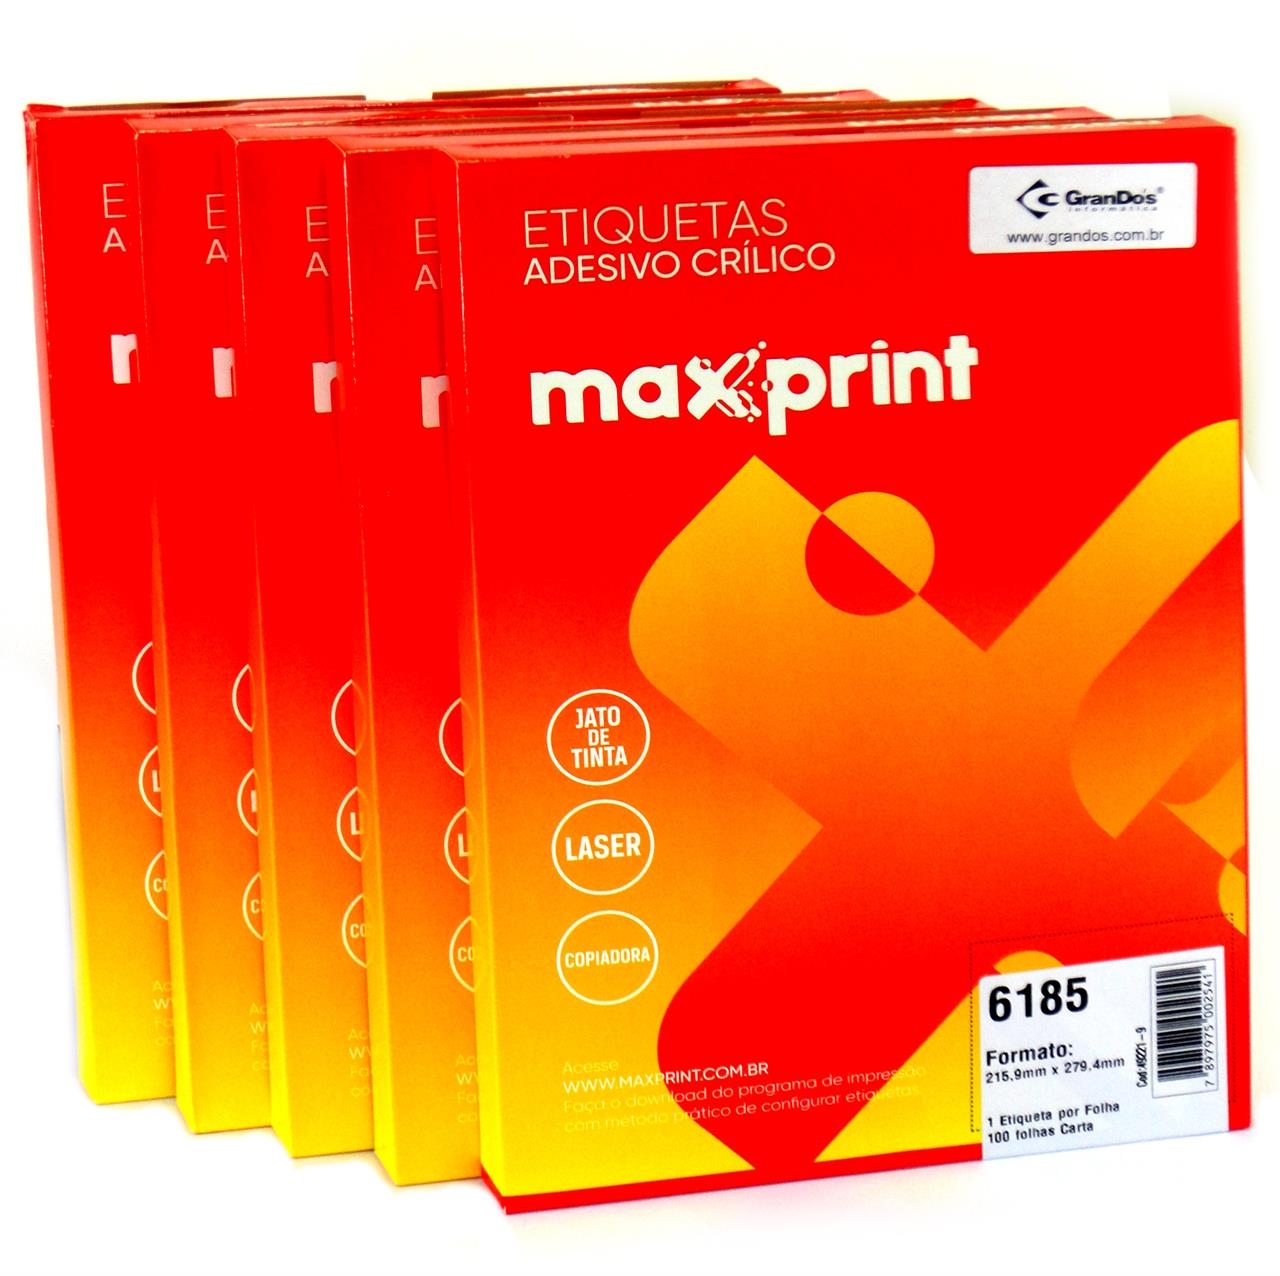 Etiquetas 6185 215,9mm x 279,4mm no Pack com 5 Caixas Maxprint